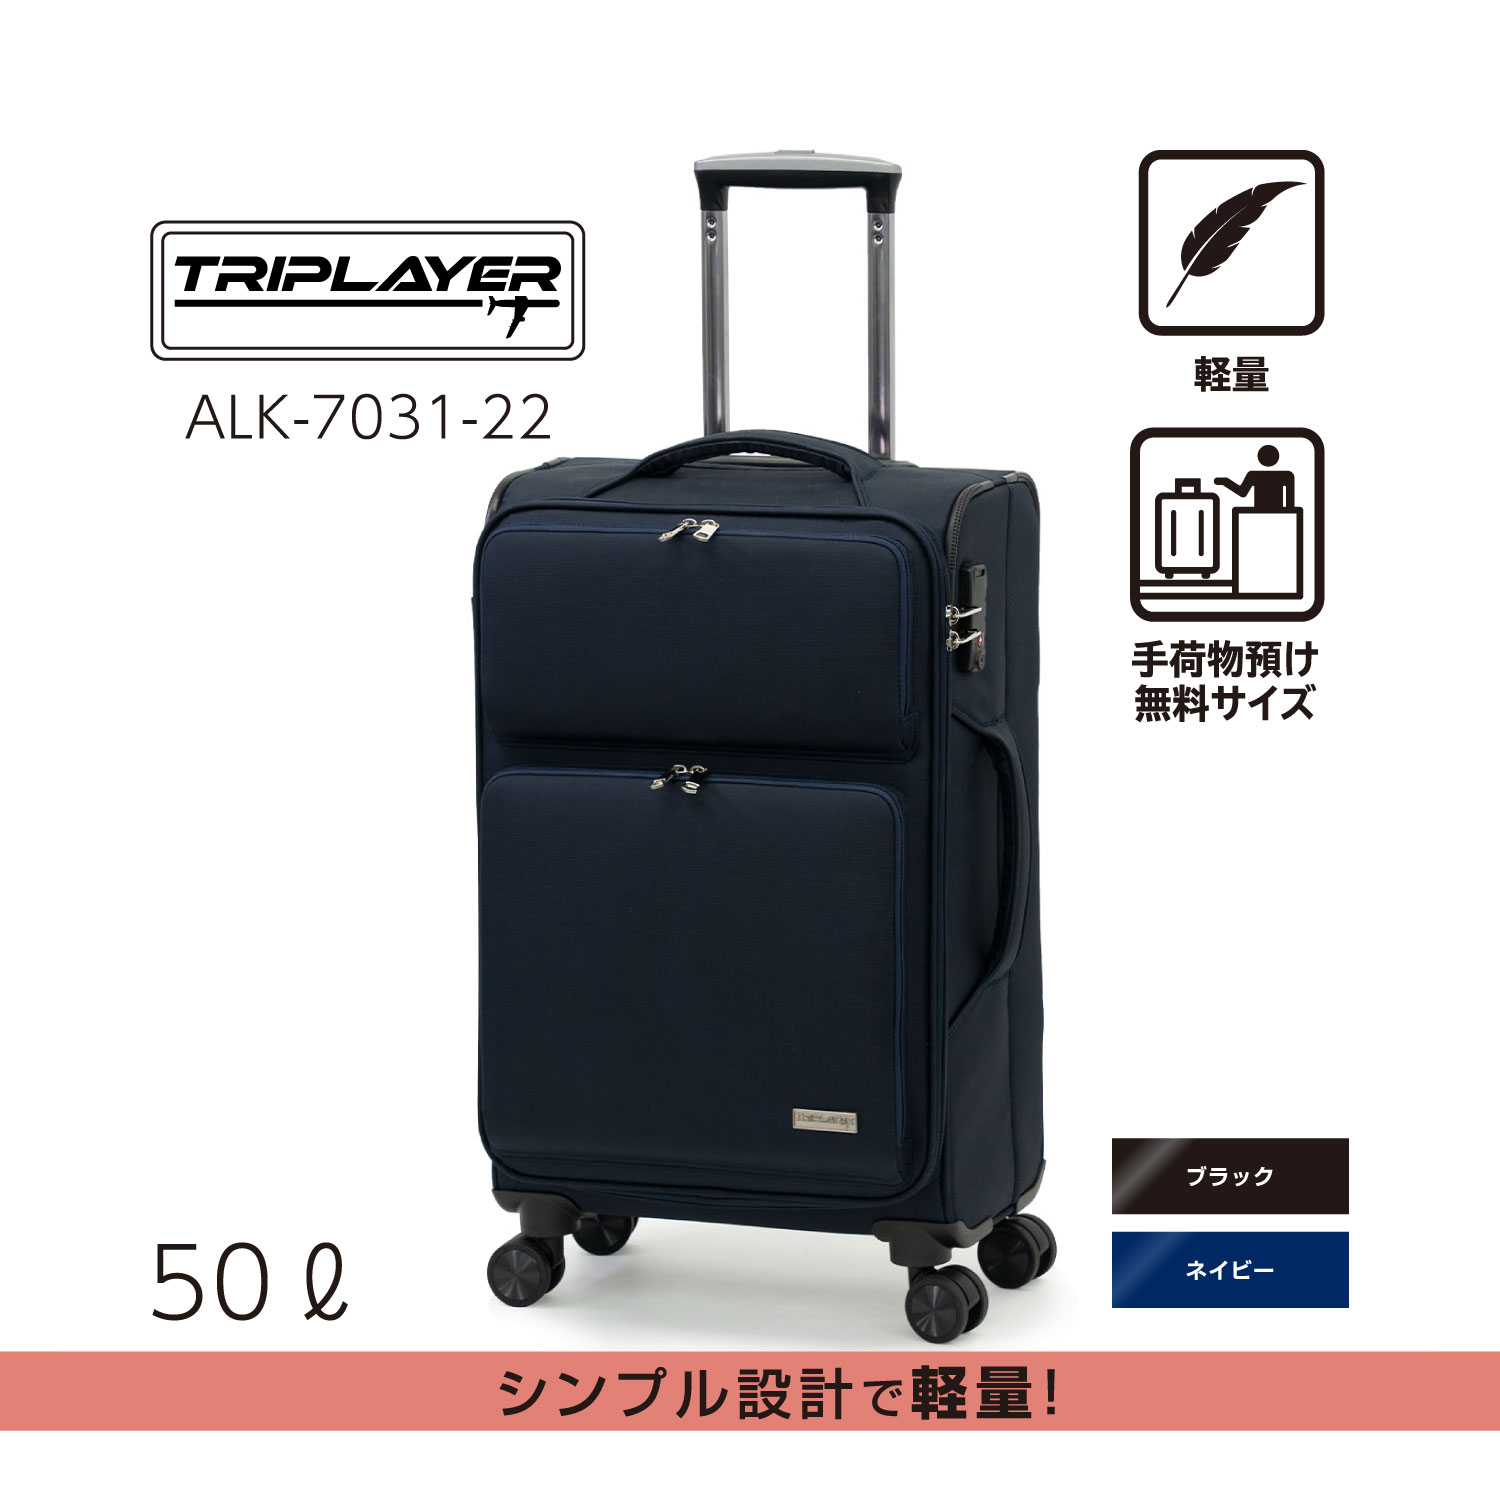 大容量 | アジア・ラゲージ 公式サイト | Asia Luggage Inc.